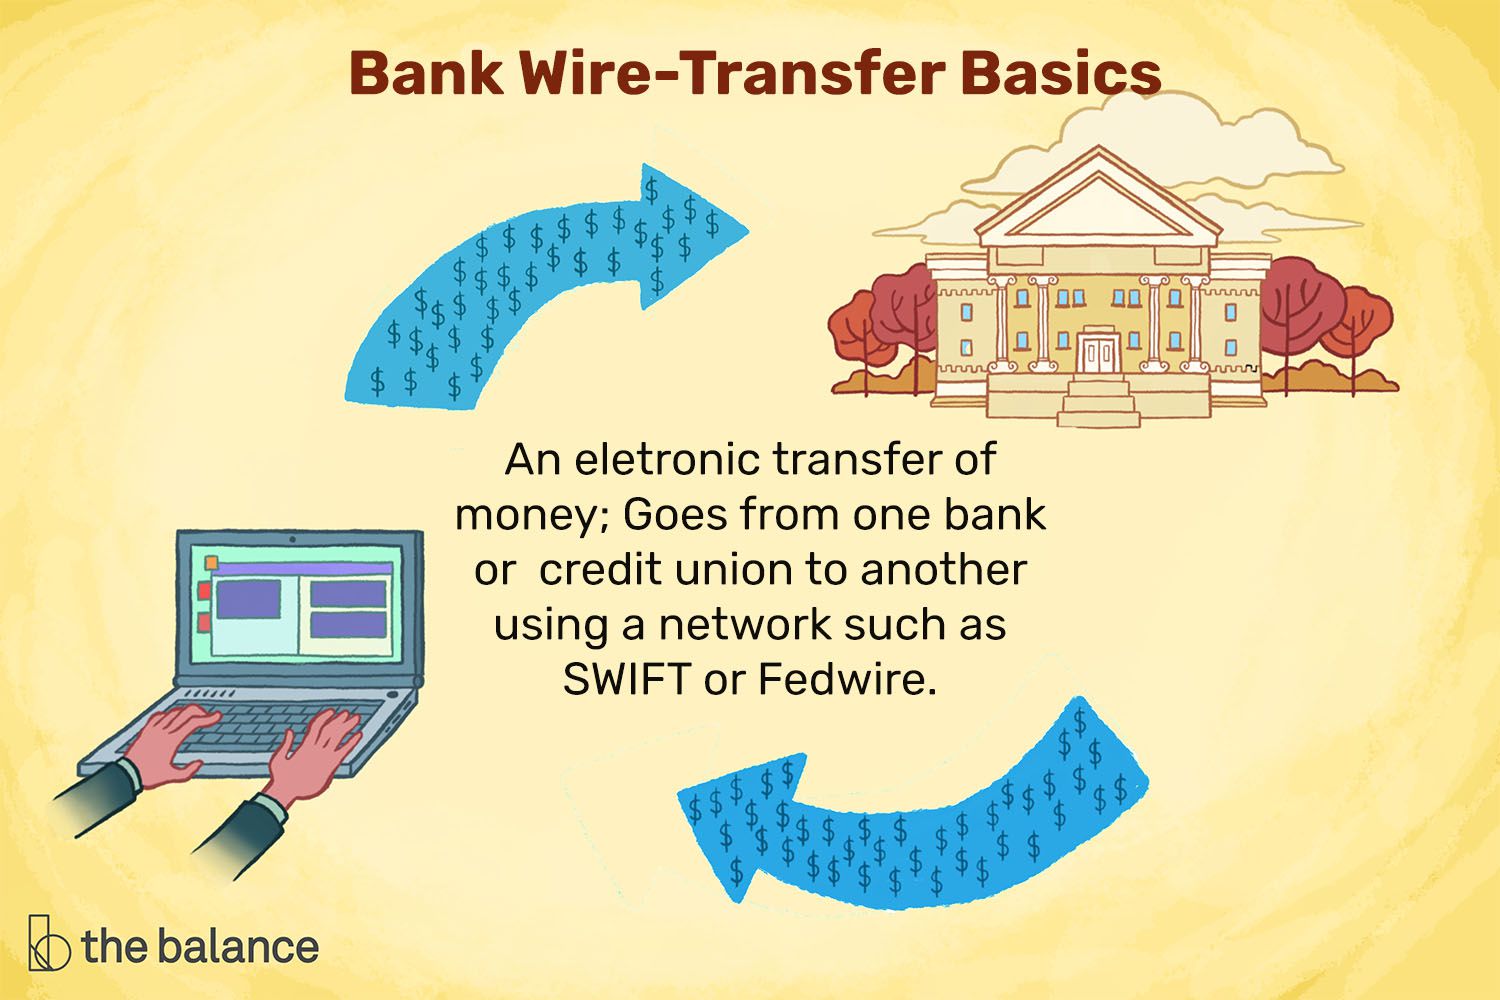 插图的标题是“银行电汇基础知识”，后面附有定义:“电子转账;通过SWIFT或federal wire等网络从一家银行或信用合作社到另一家银行。”＂class=